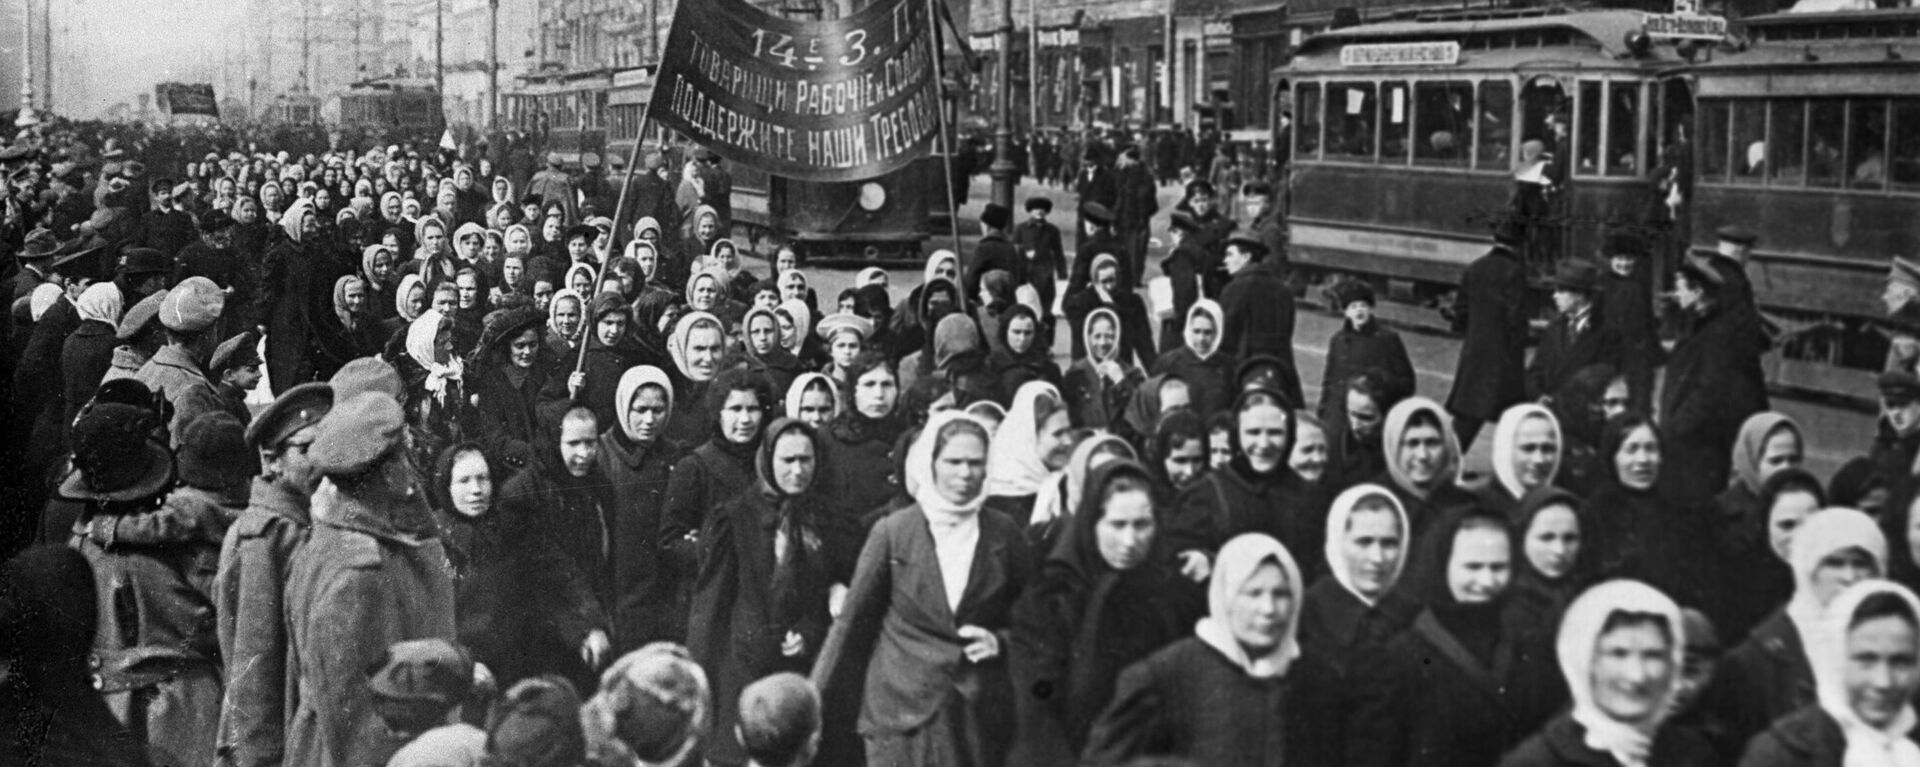 Демонстрация женщин, архивное фото - Sputnik Таджикистан, 1920, 03.04.2021